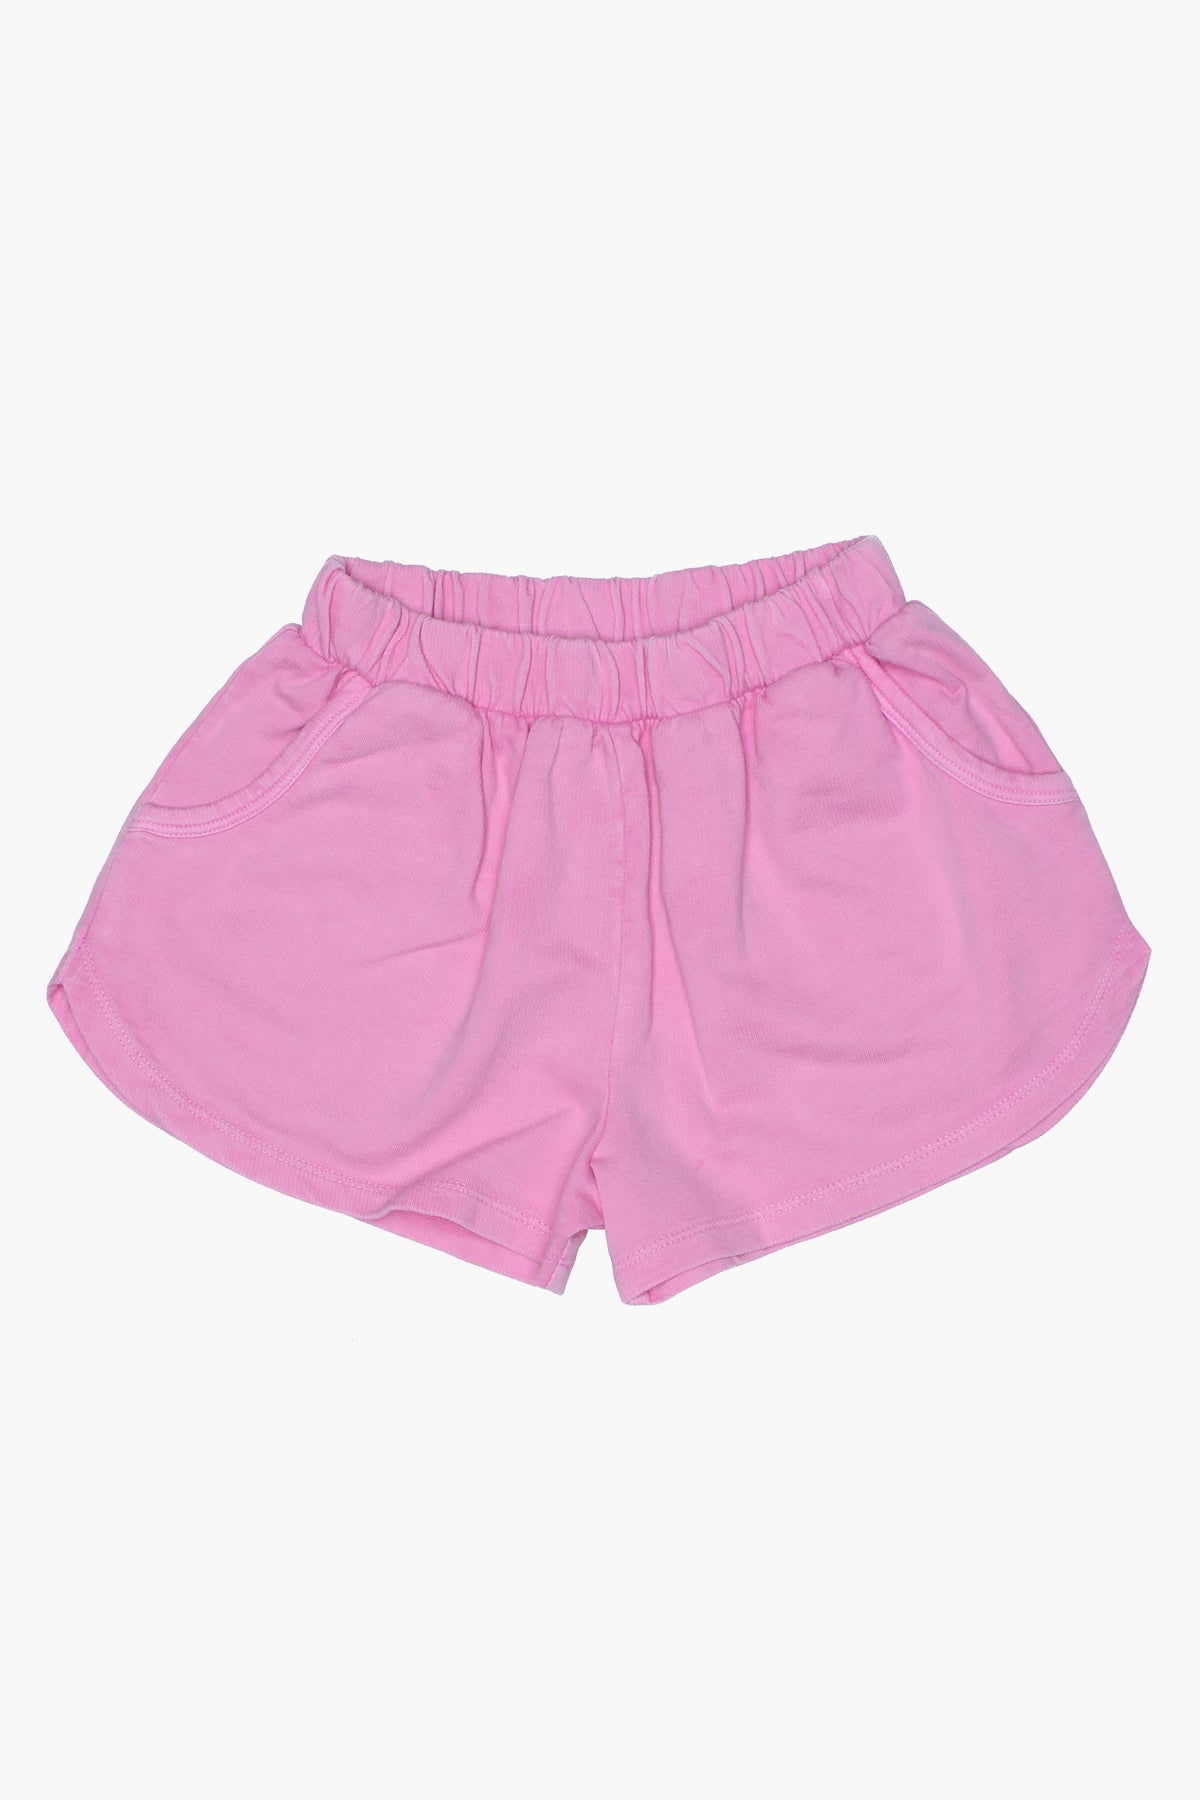 Joah Love Amal Girls Shorts (Size 2 left) – Mini Ruby